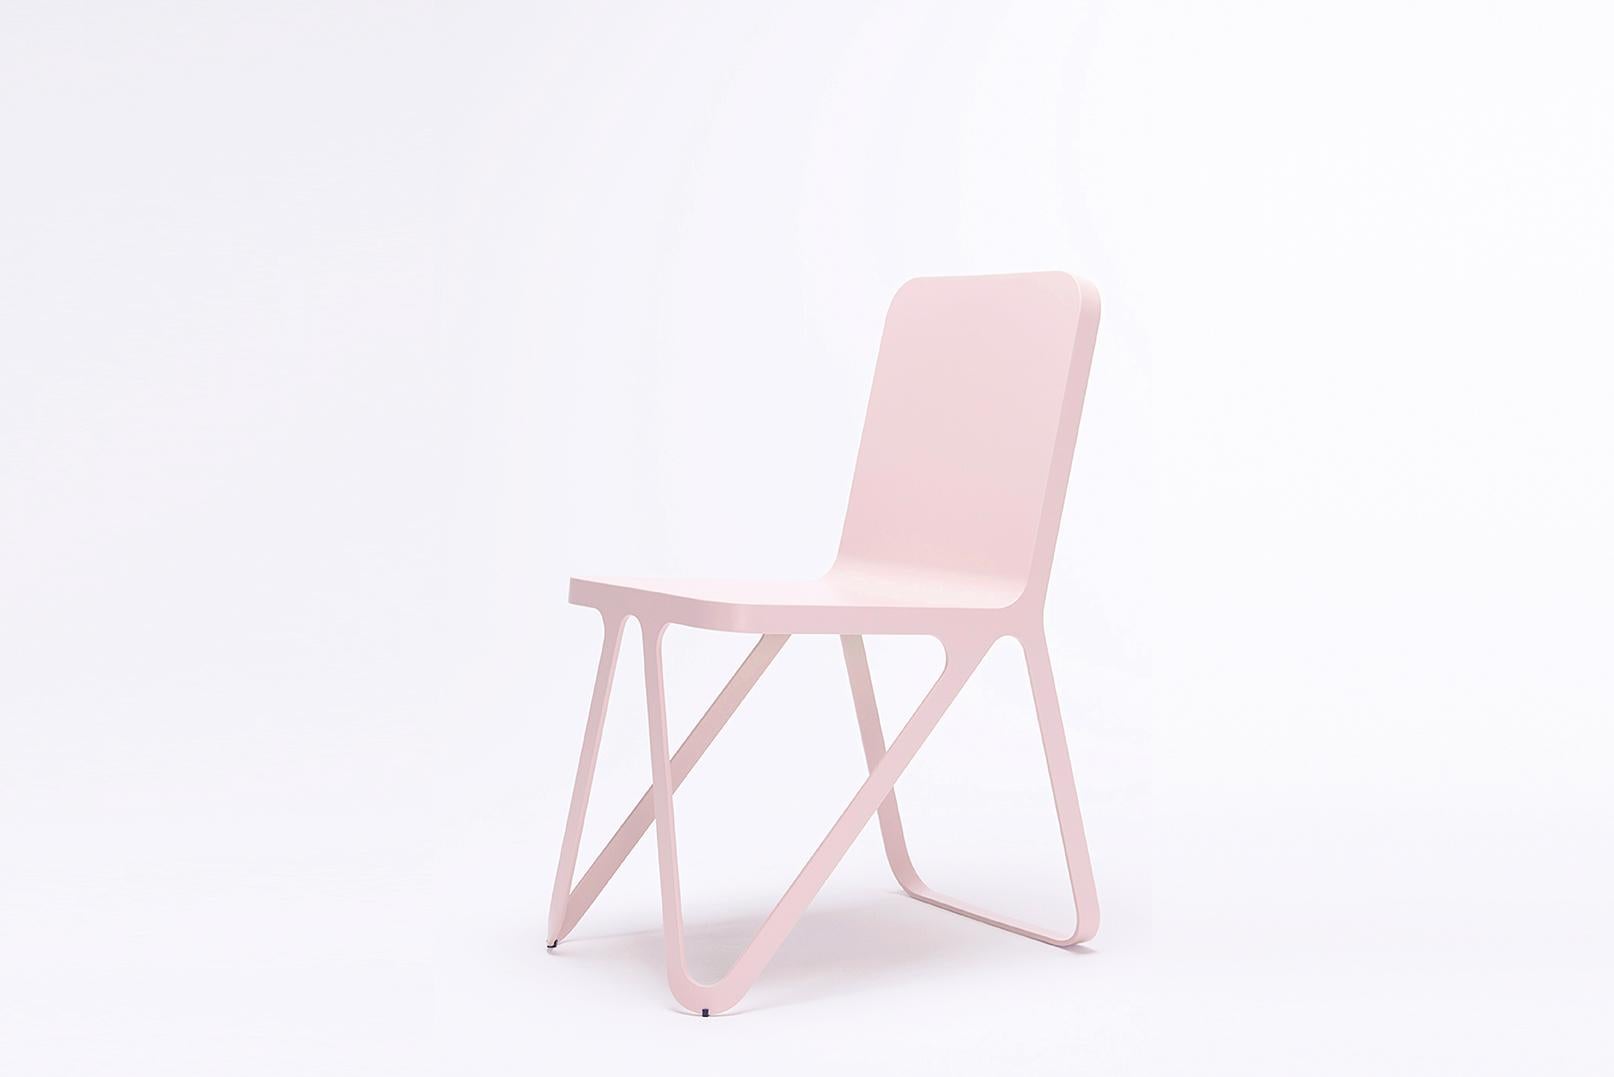 Rose loop chair von Sebastian Scherer
Abmessungen: T57x B40 x H80 cm
MATERIAL: Aluminium.
Gewicht: 5,1 kg.
Auch verfügbar: Farben: Schneeweiß / Hellsand / Sonnengelb / Tonorange / Rostrot / Spaceblau / Graphitgrau / Dunkelbronze /